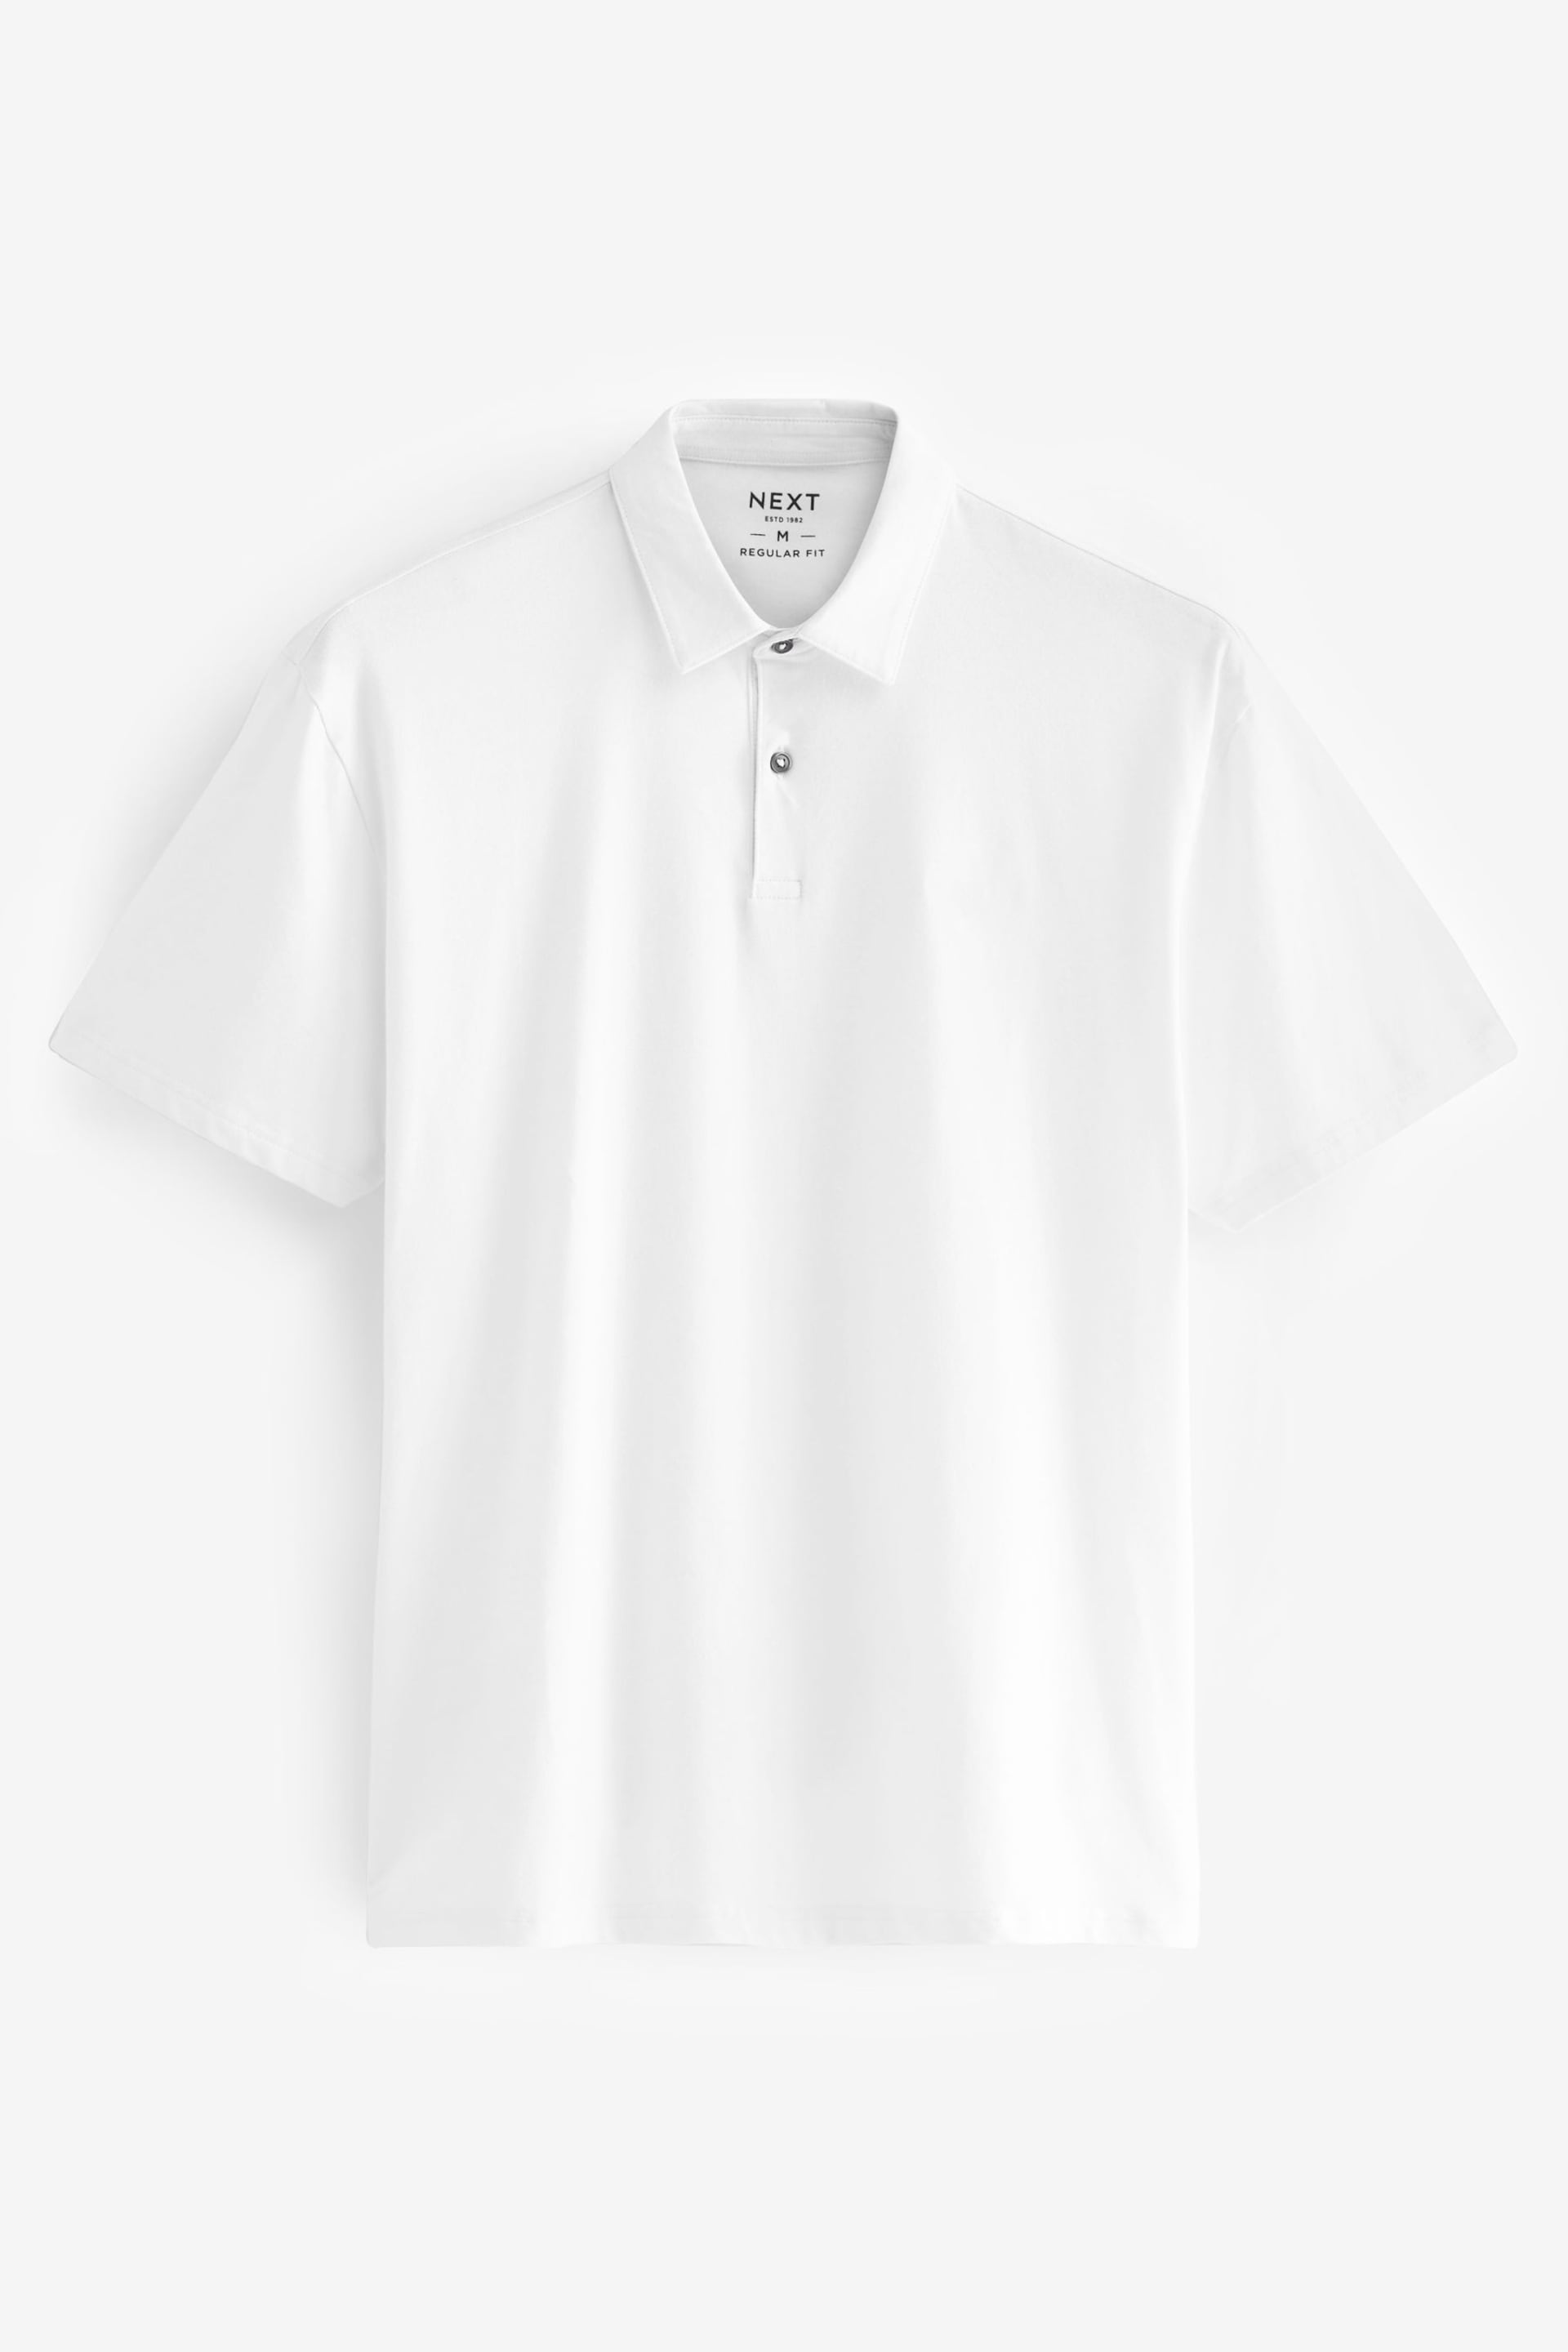 White Short Sleeve Polo Shirt - Image 5 of 6